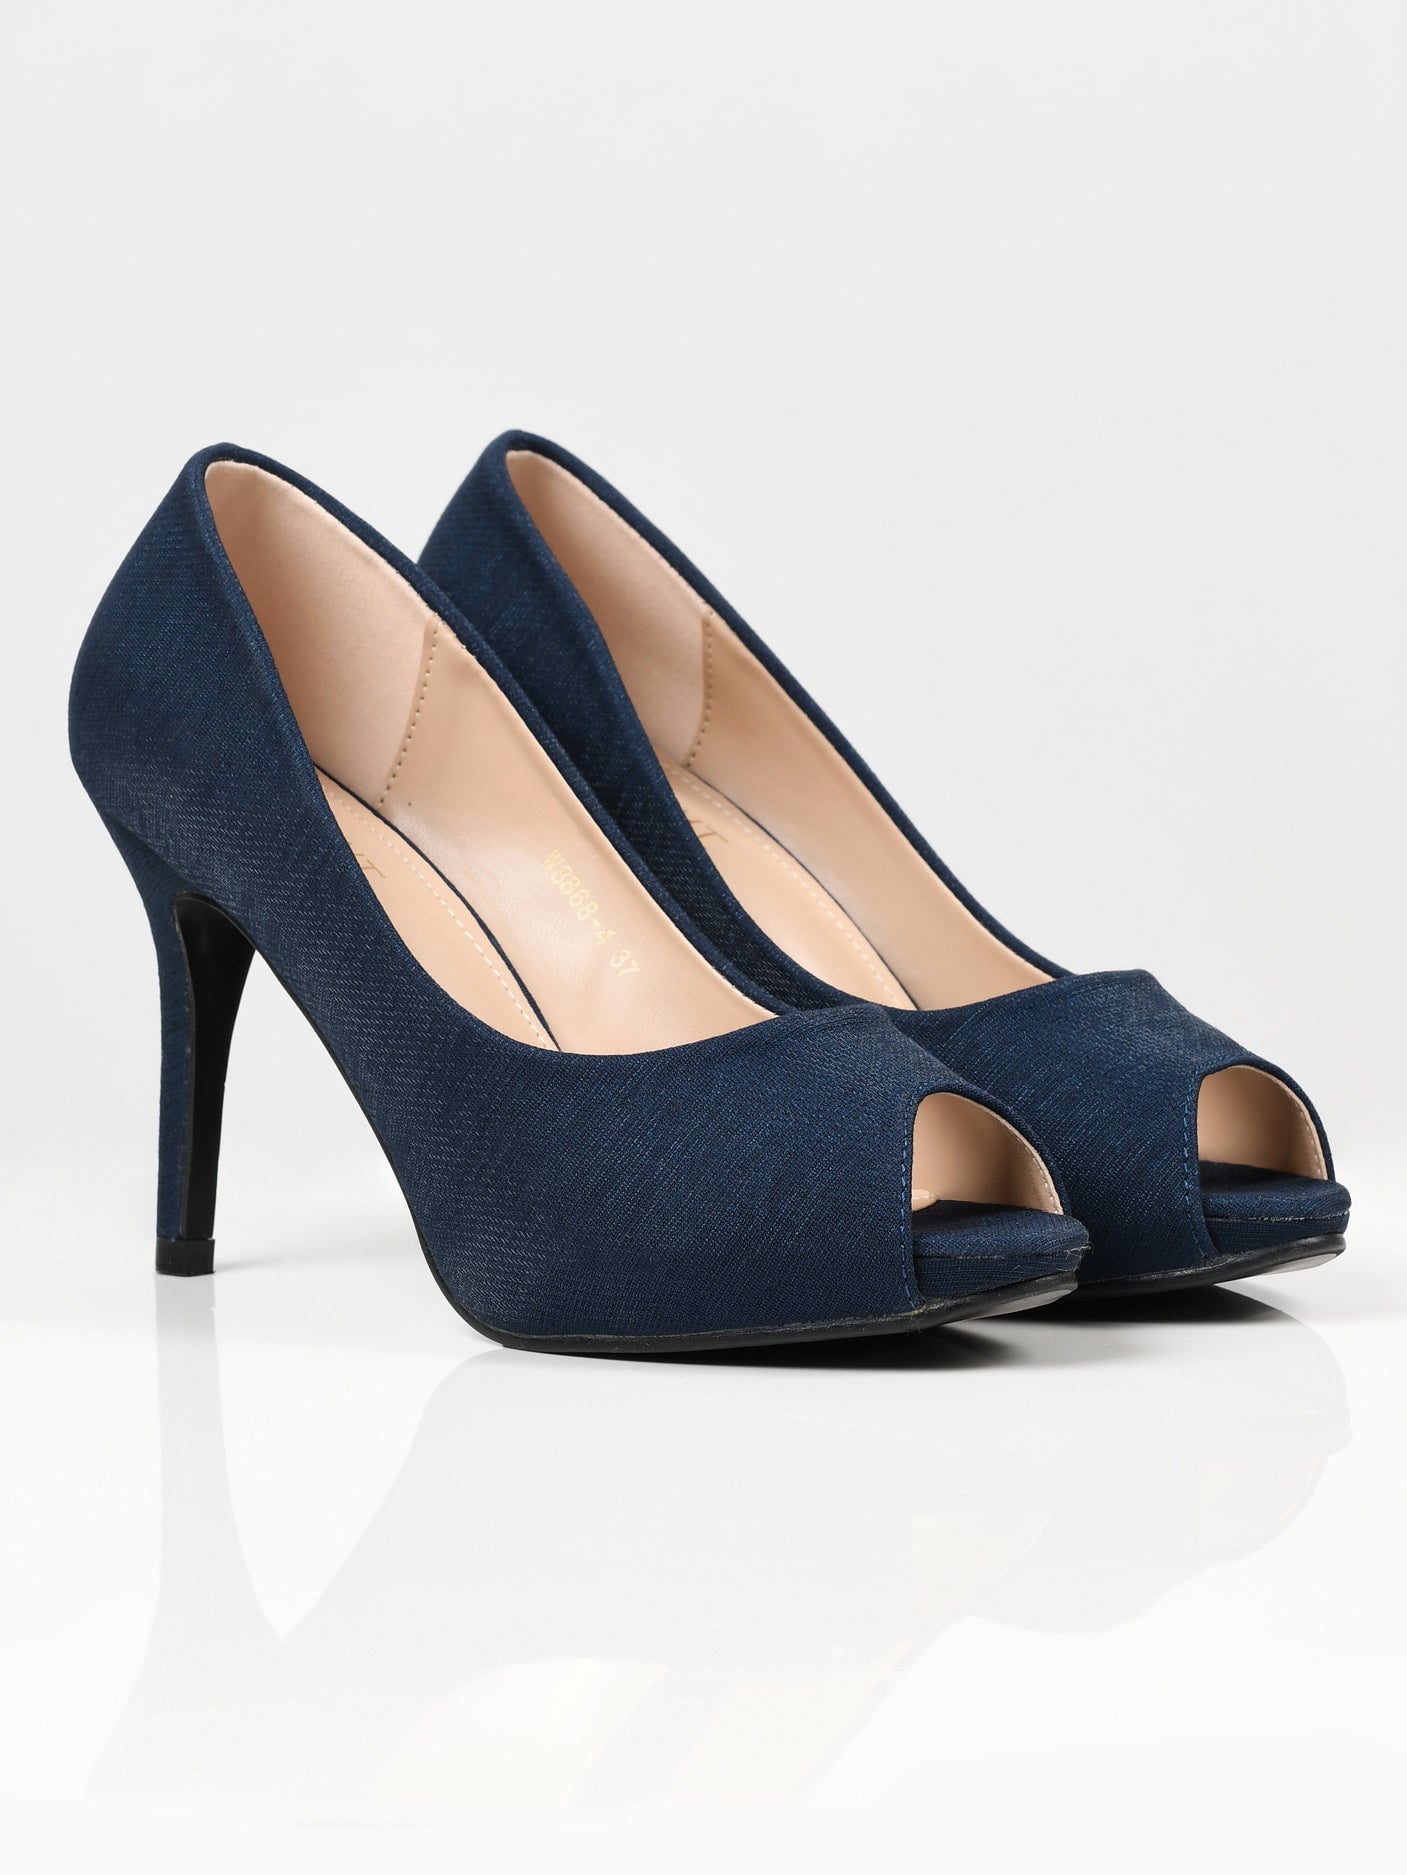 Shimmery Heels - Navy Blue